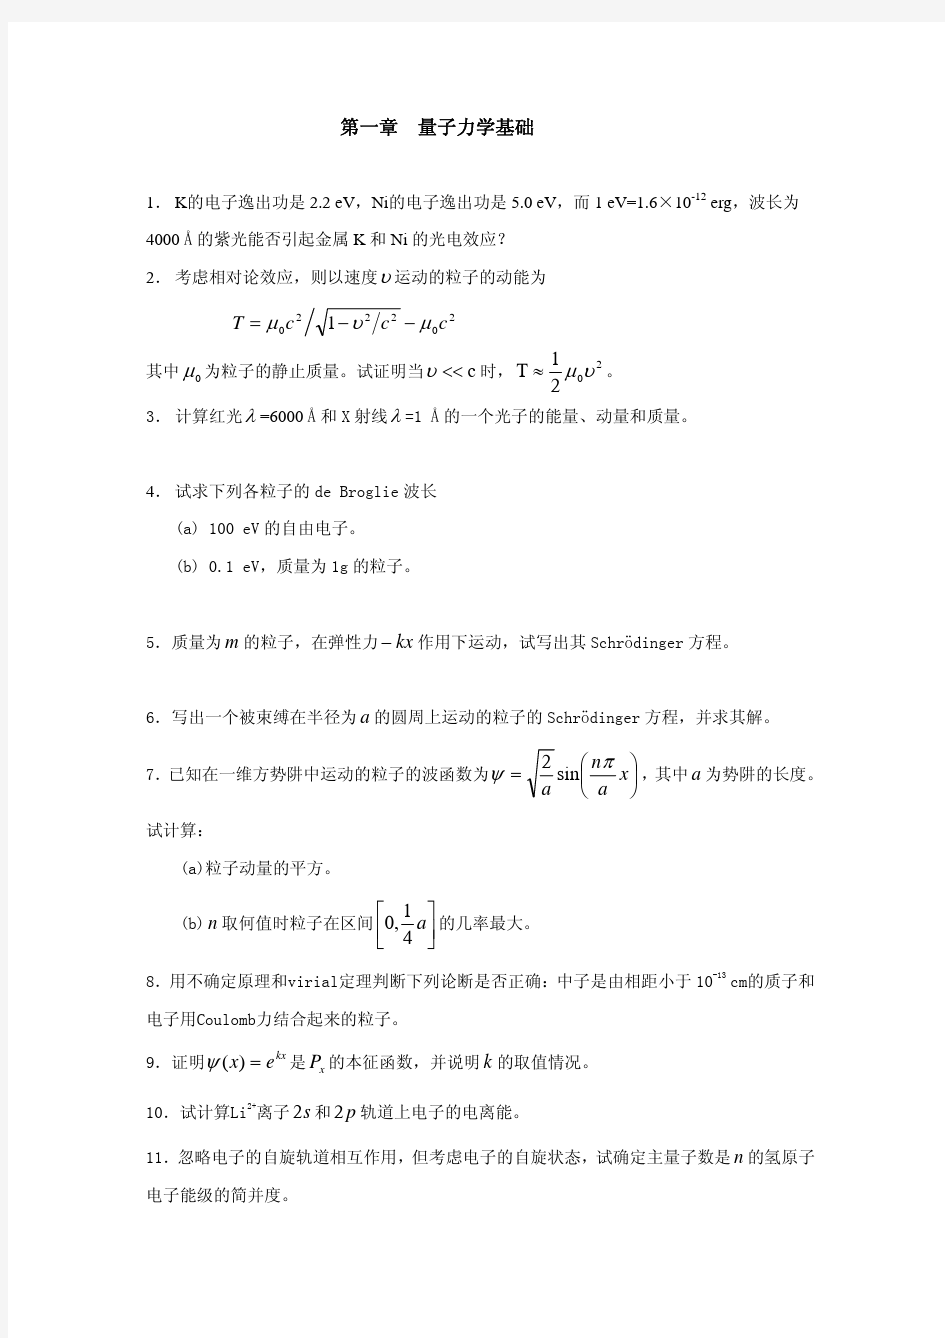 结构化学试题合辑(附解析)-化学-材料科学-中国科技大学-共558页